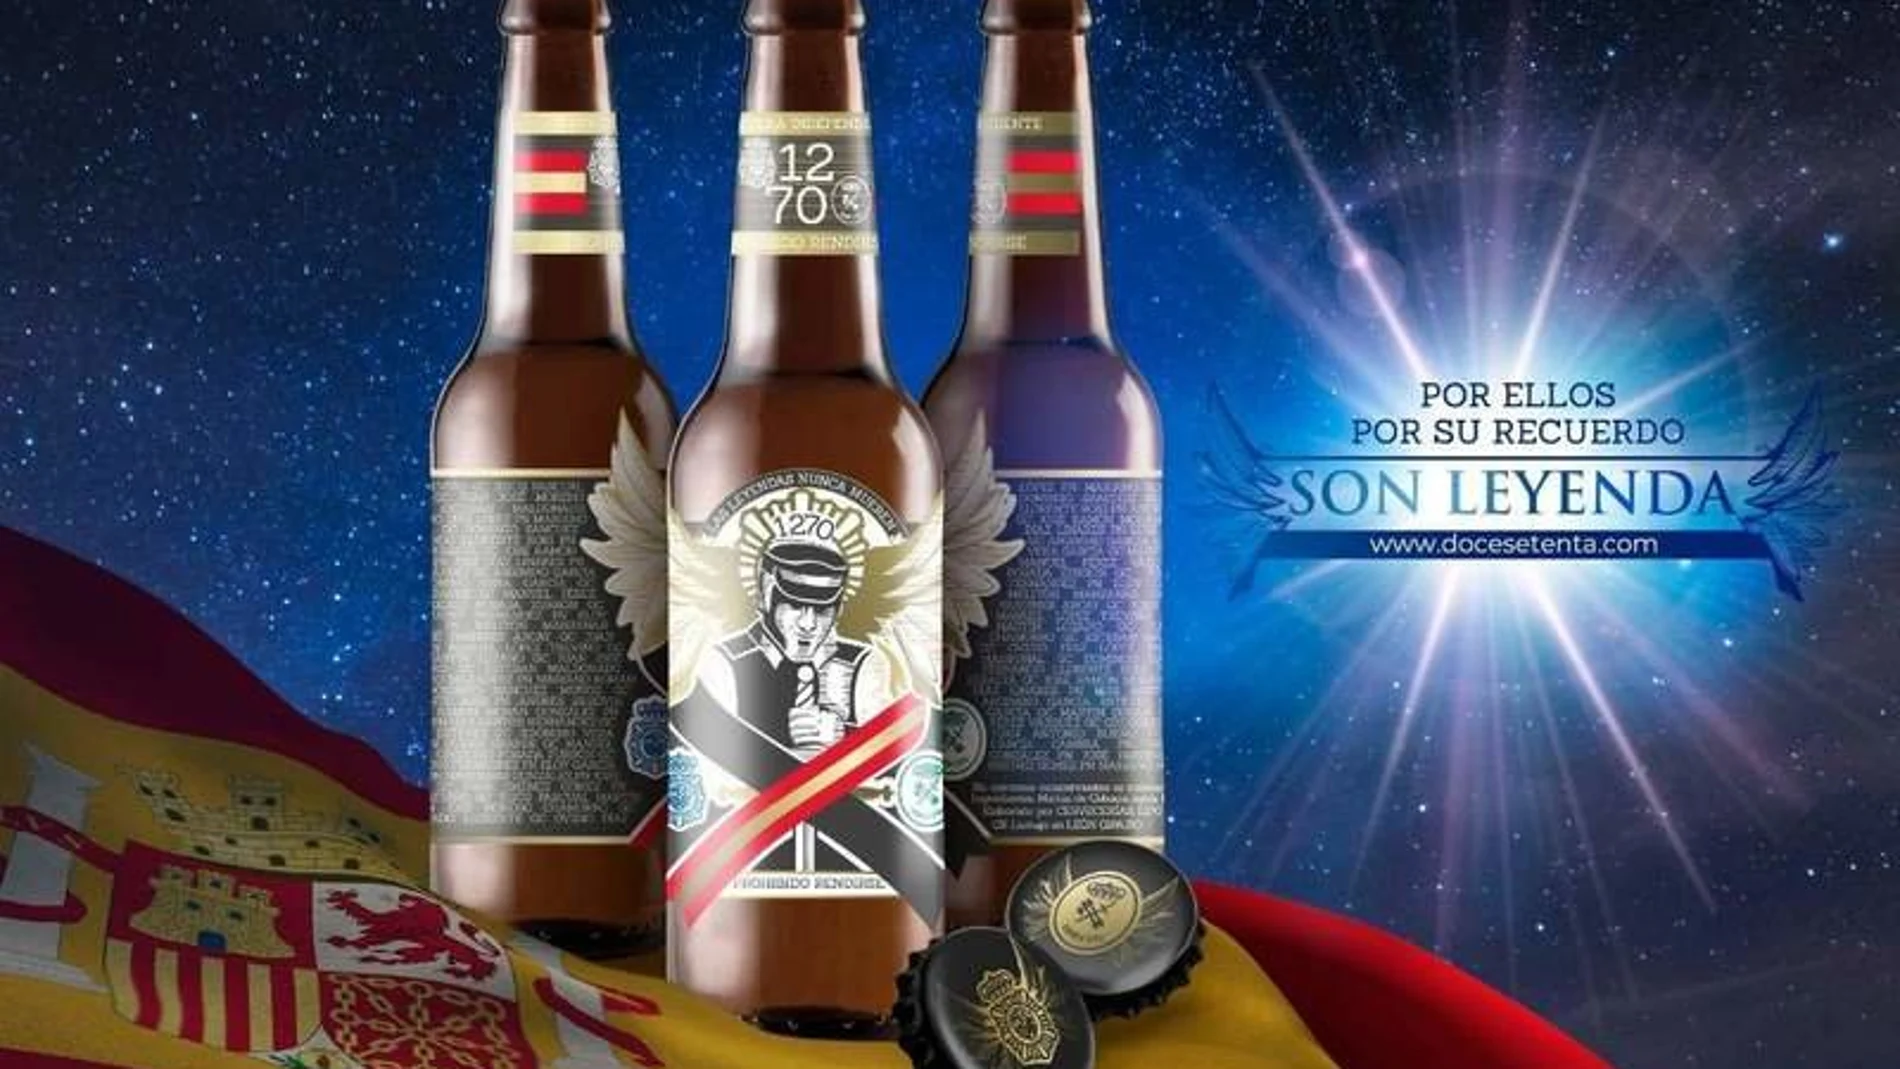 Imagen de la campaña promocional de la cerveza 12.70